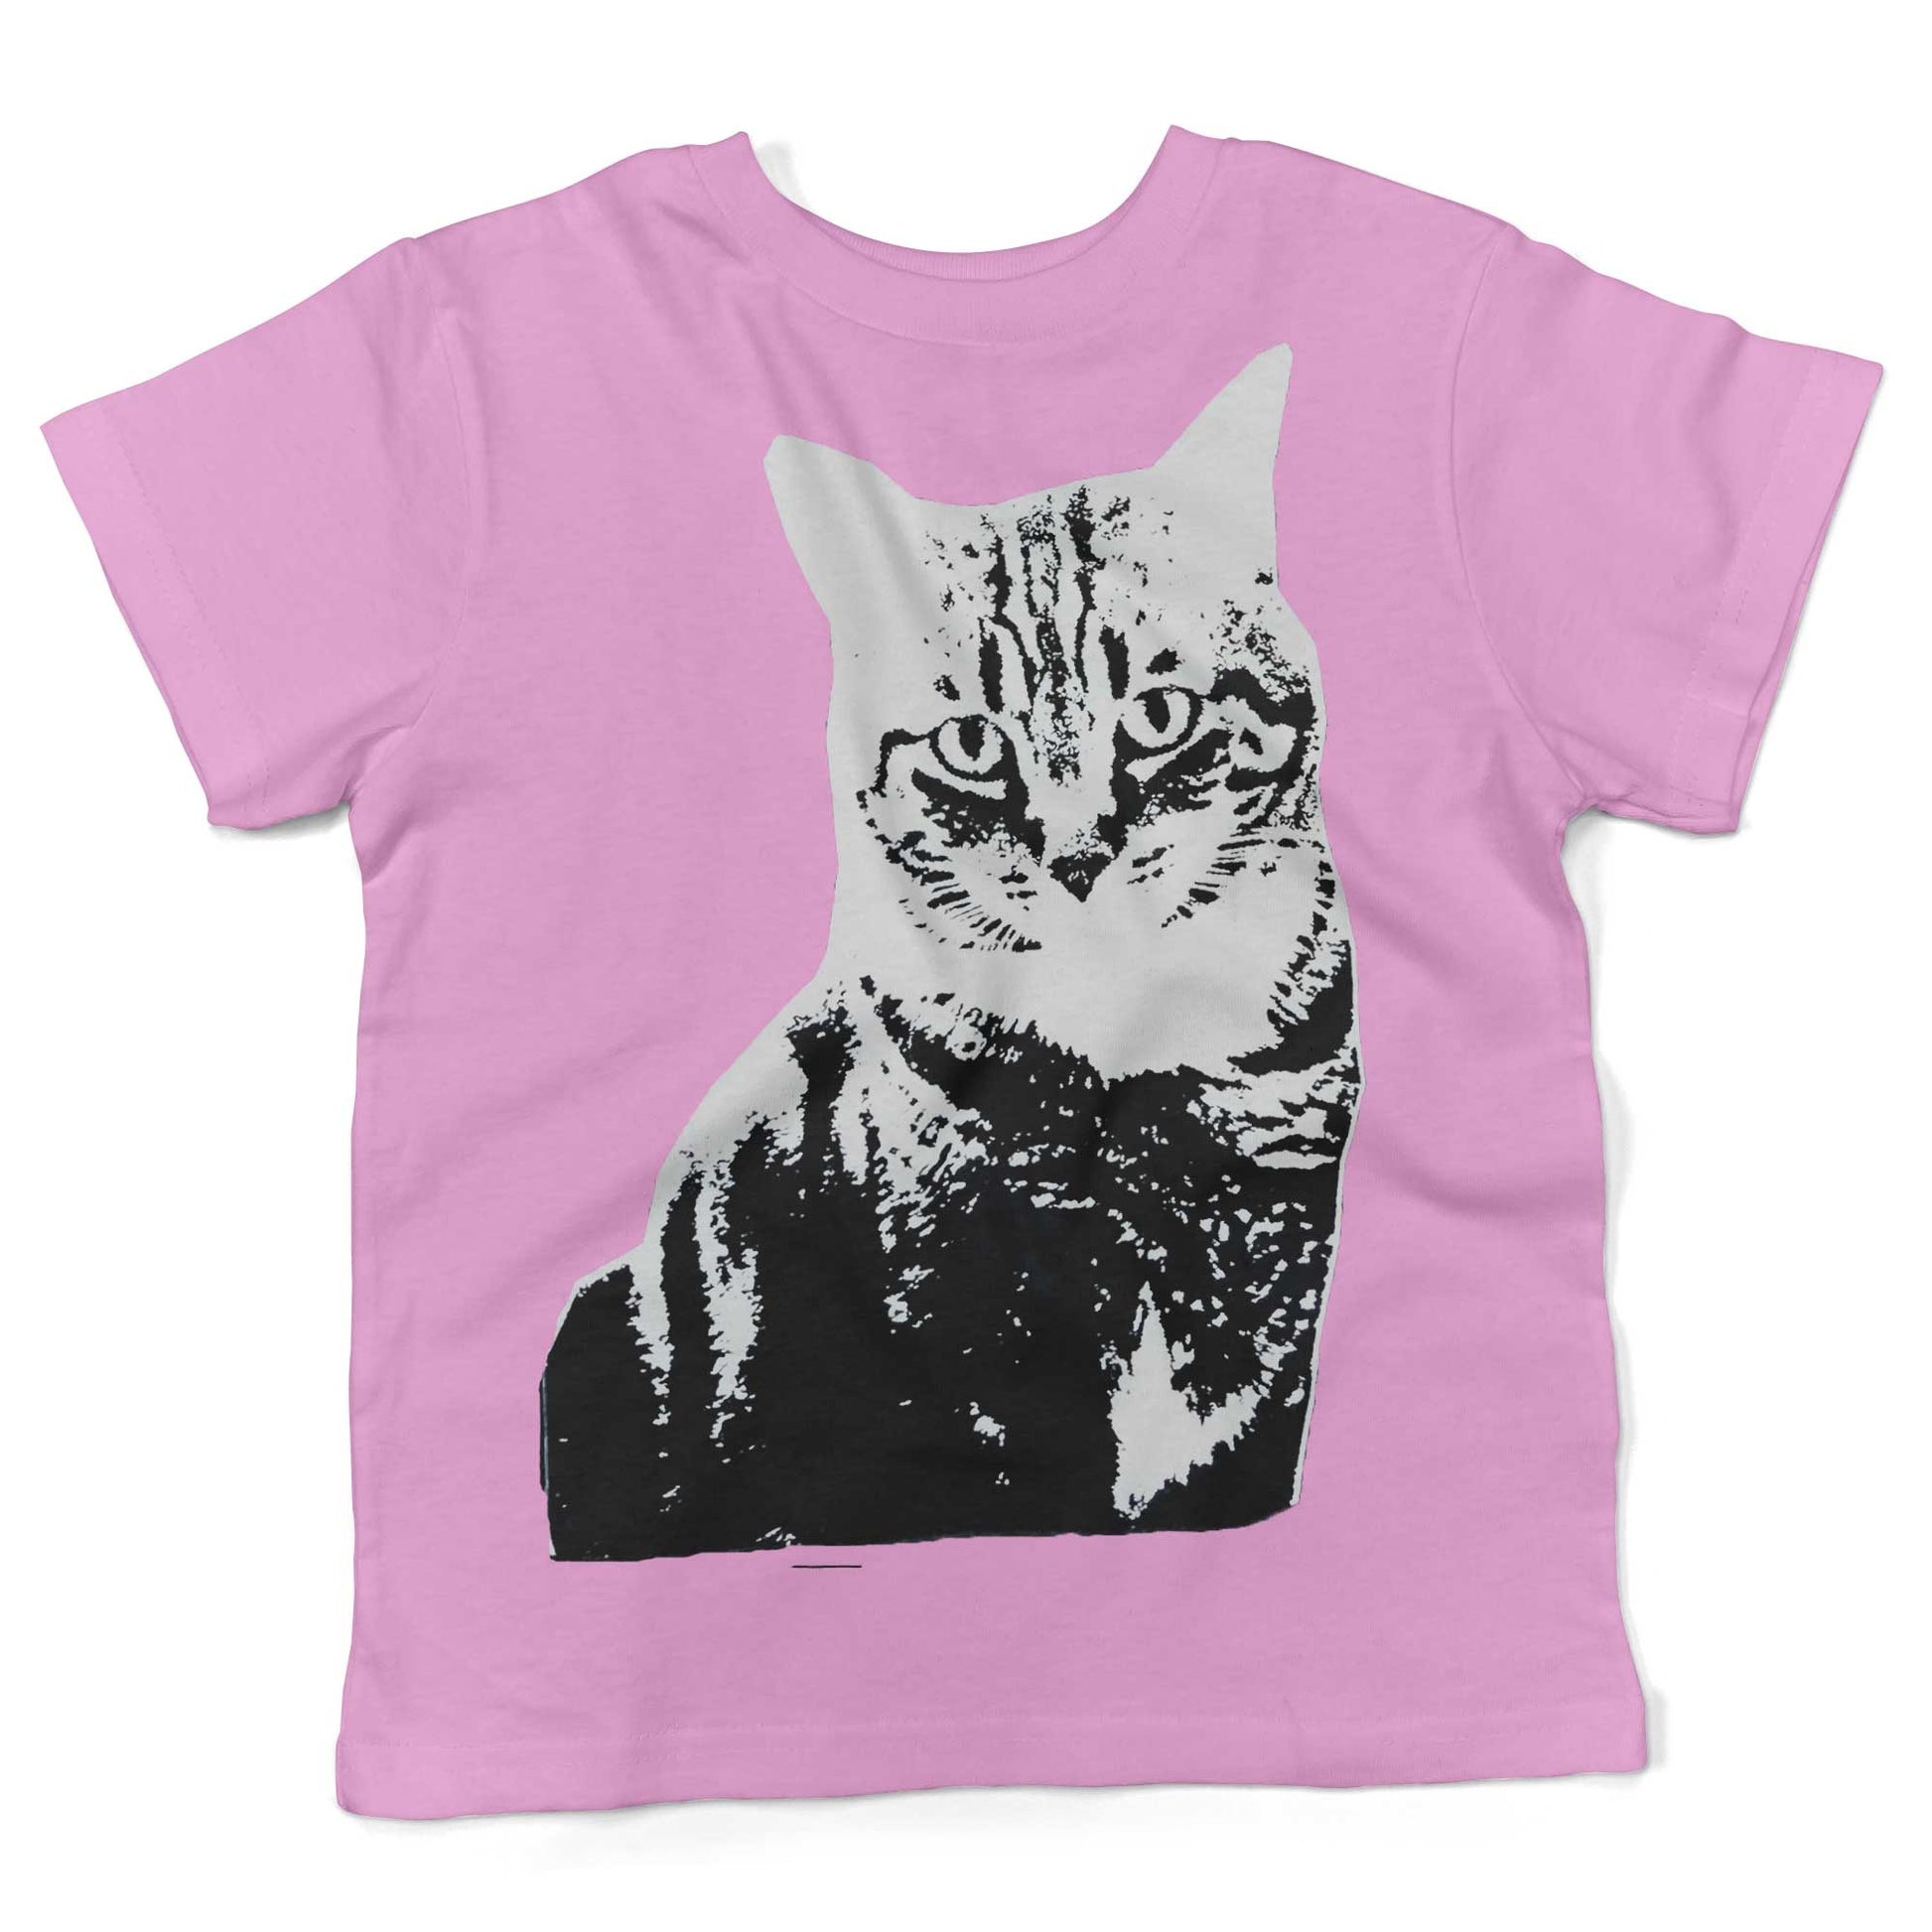 Black & White Cat Toddler Shirt-Organic Pink-2T